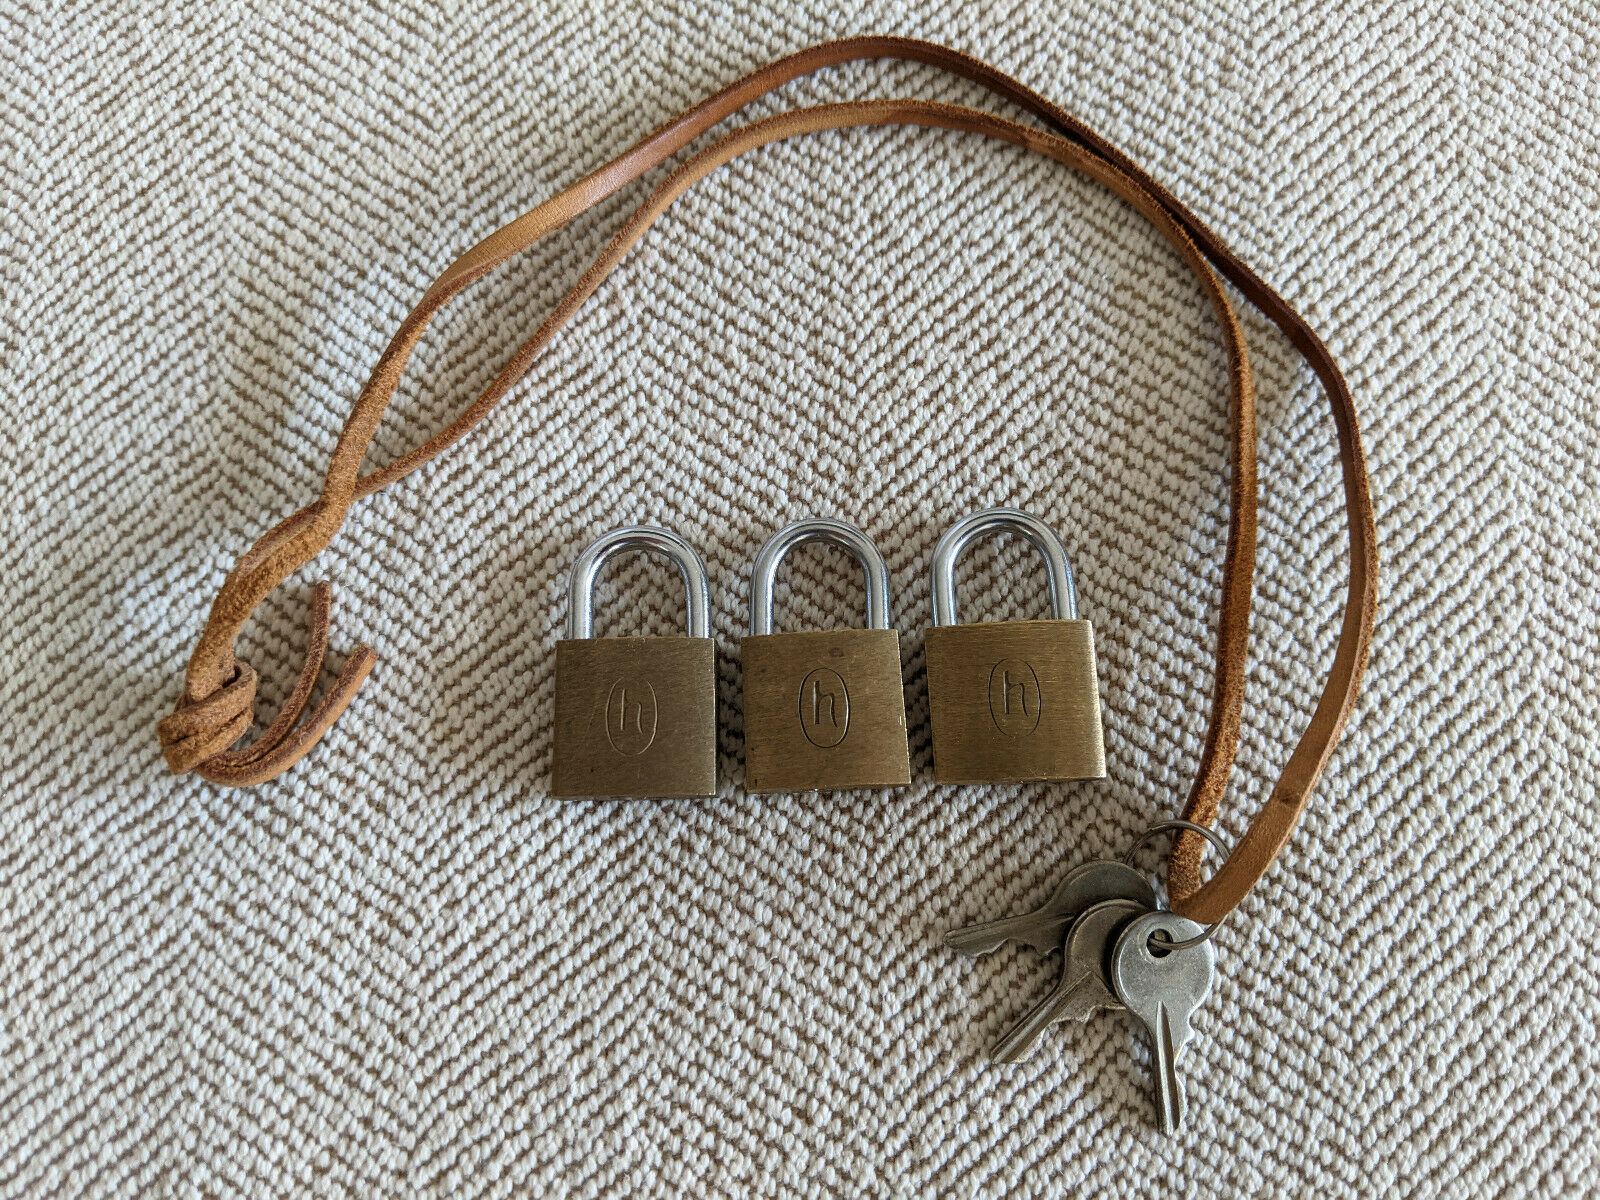 Lot Of 3 Vintage Hartmann Luggage Padlock Lock & 3 Keys